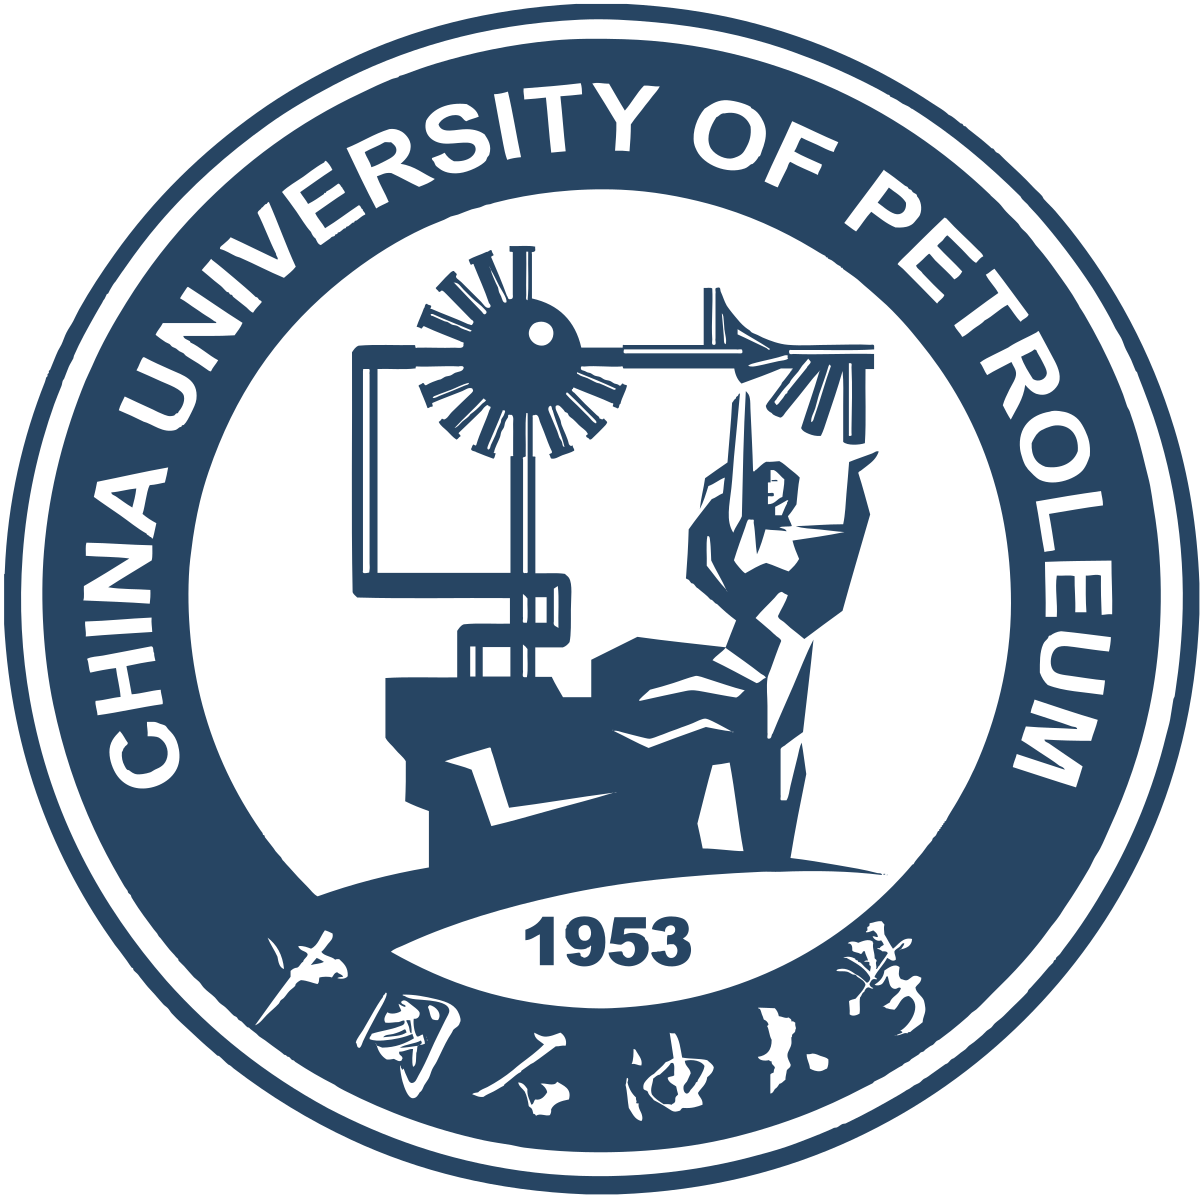 logo of china university of petroleum